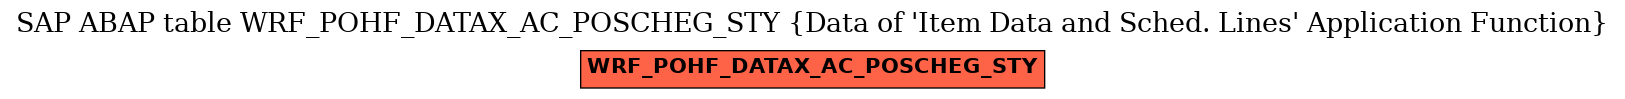 E-R Diagram for table WRF_POHF_DATAX_AC_POSCHEG_STY (Data of 